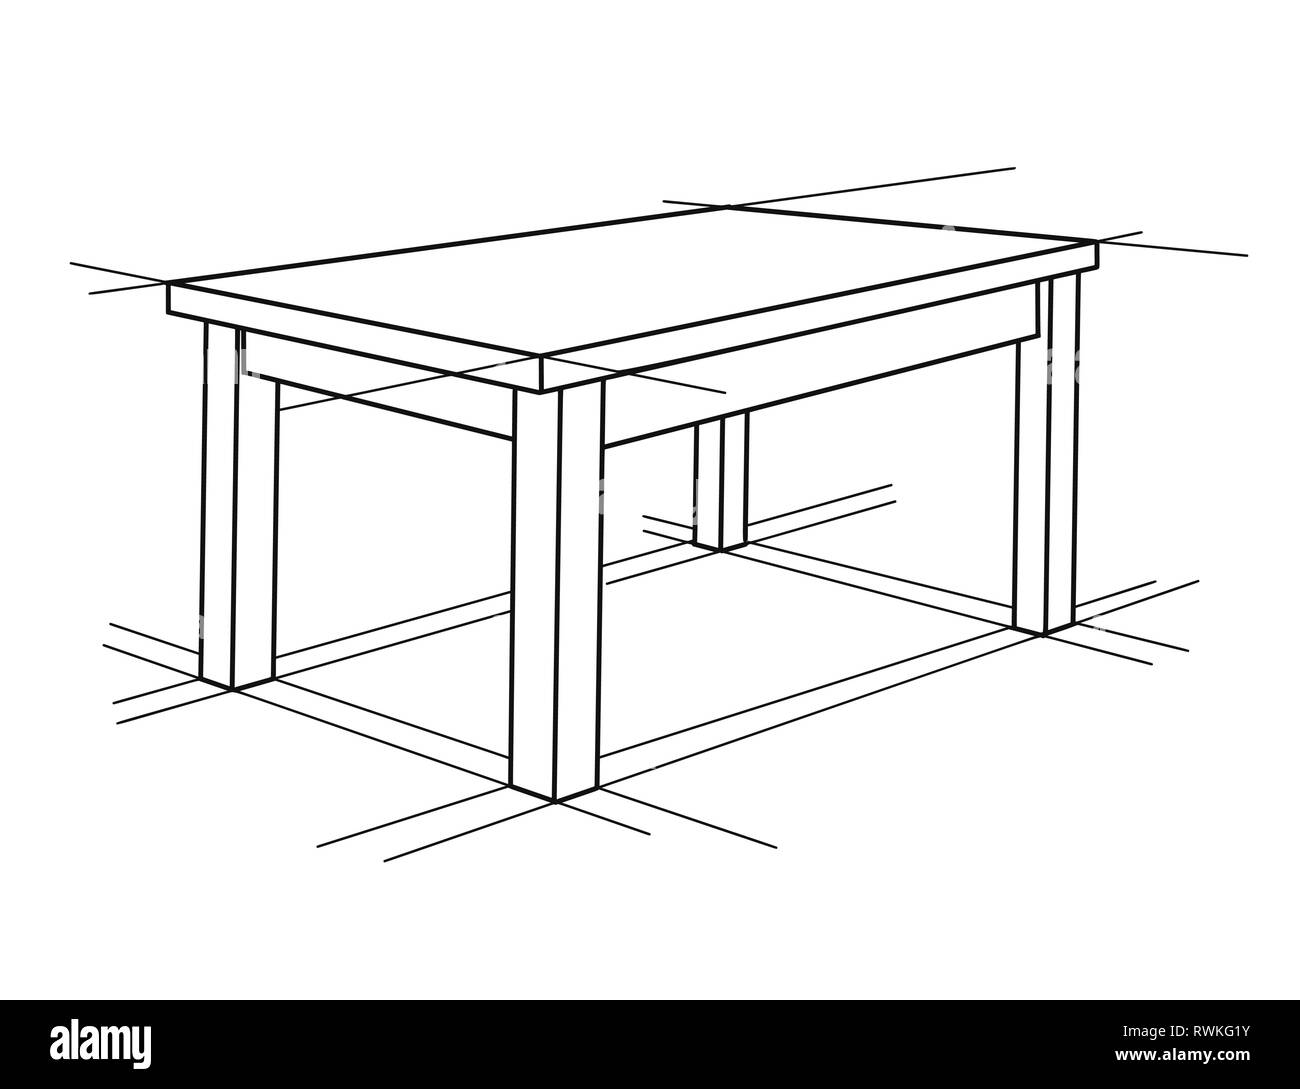 Dibujo realista de muebles Imágenes recortadas de stock - Alamy